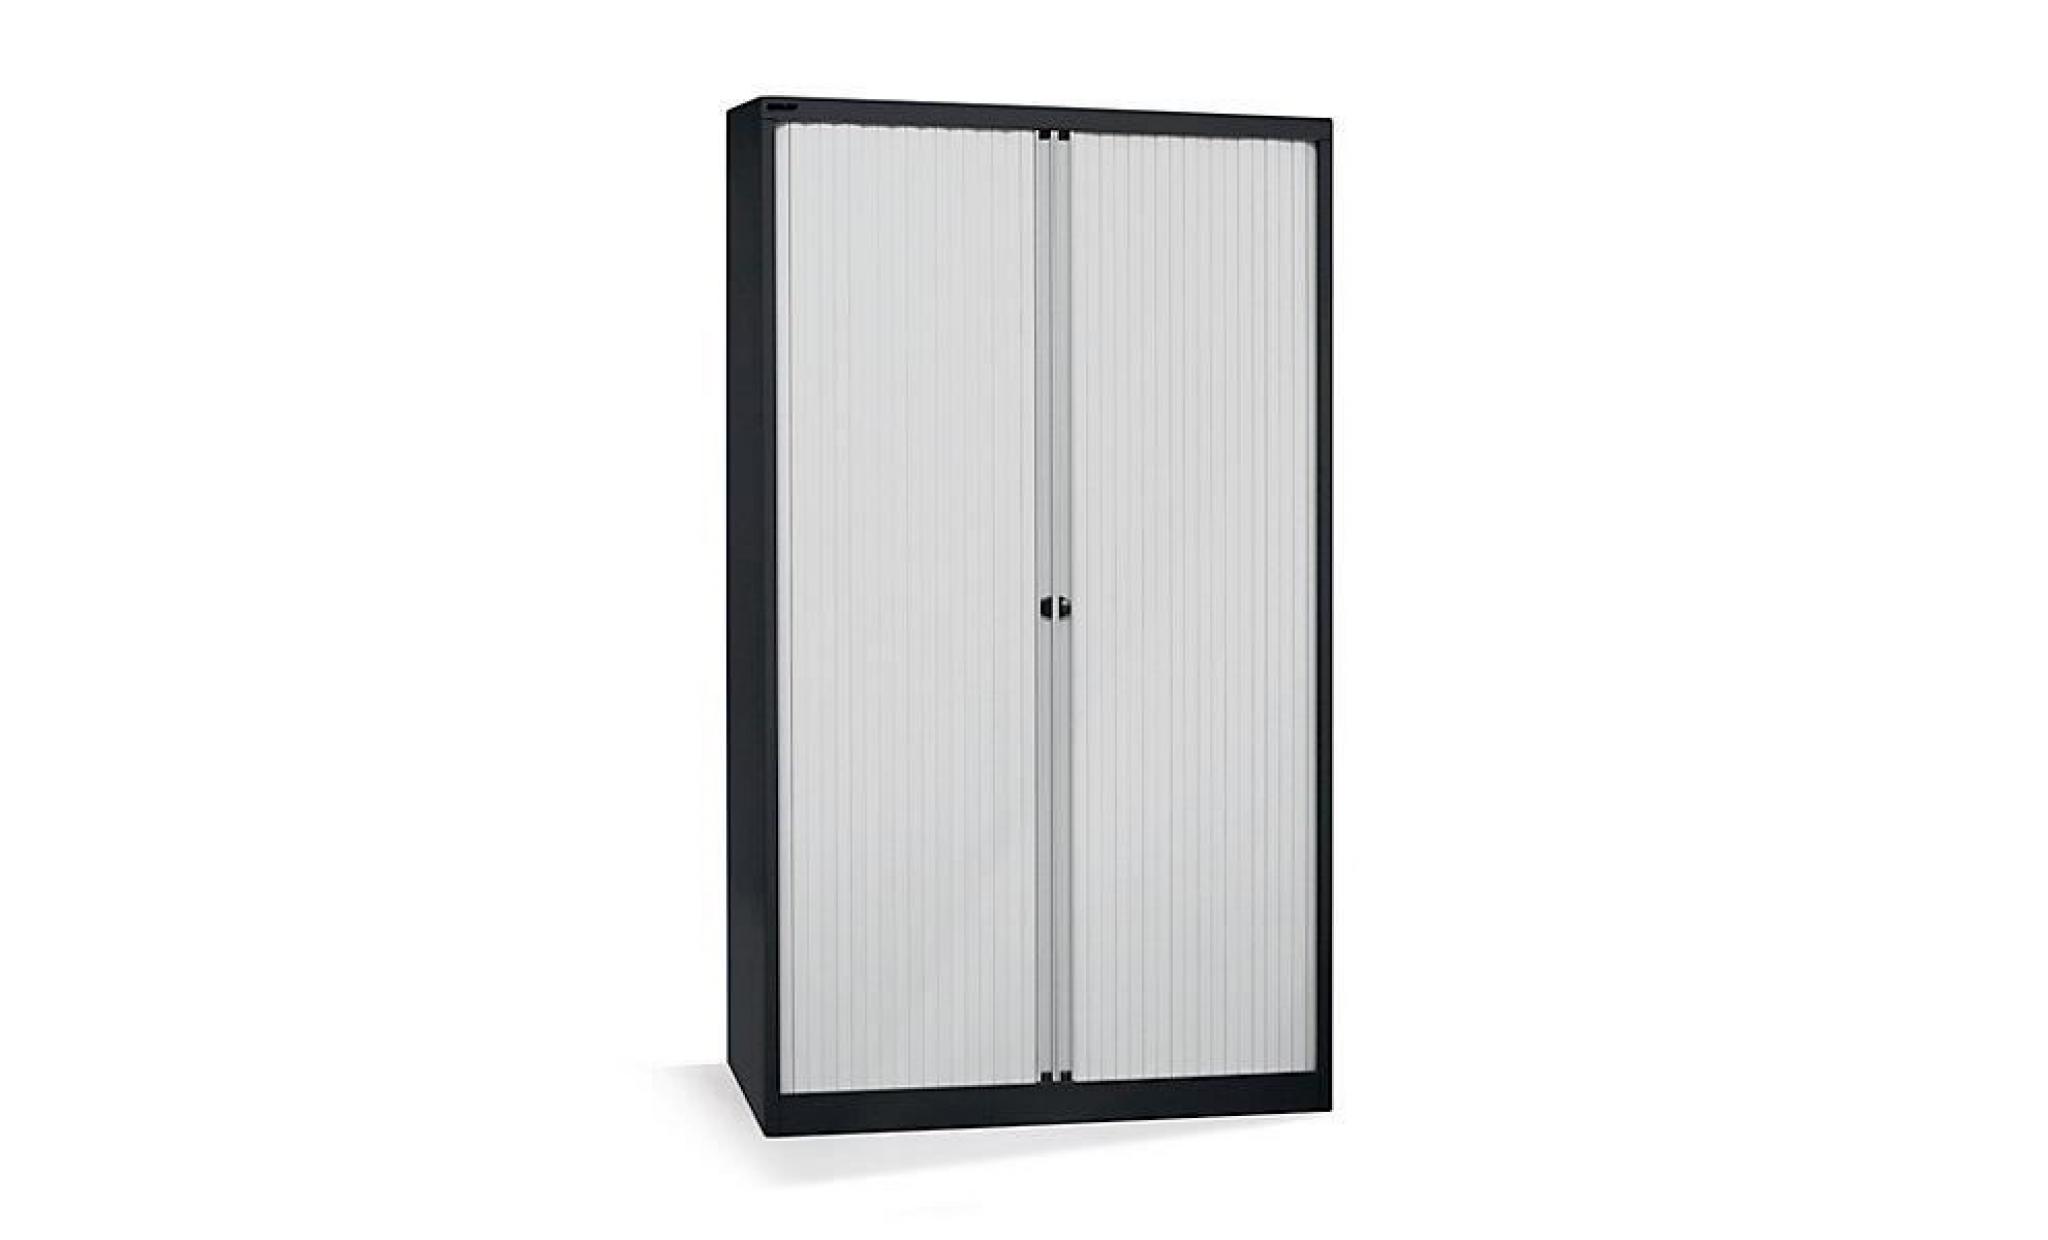 bisley armoire à rideaux   horizontal, noir profond / gris clair h x l 1030 x 1000 mm, 2 tablettes   armoire basse armoire de bureau